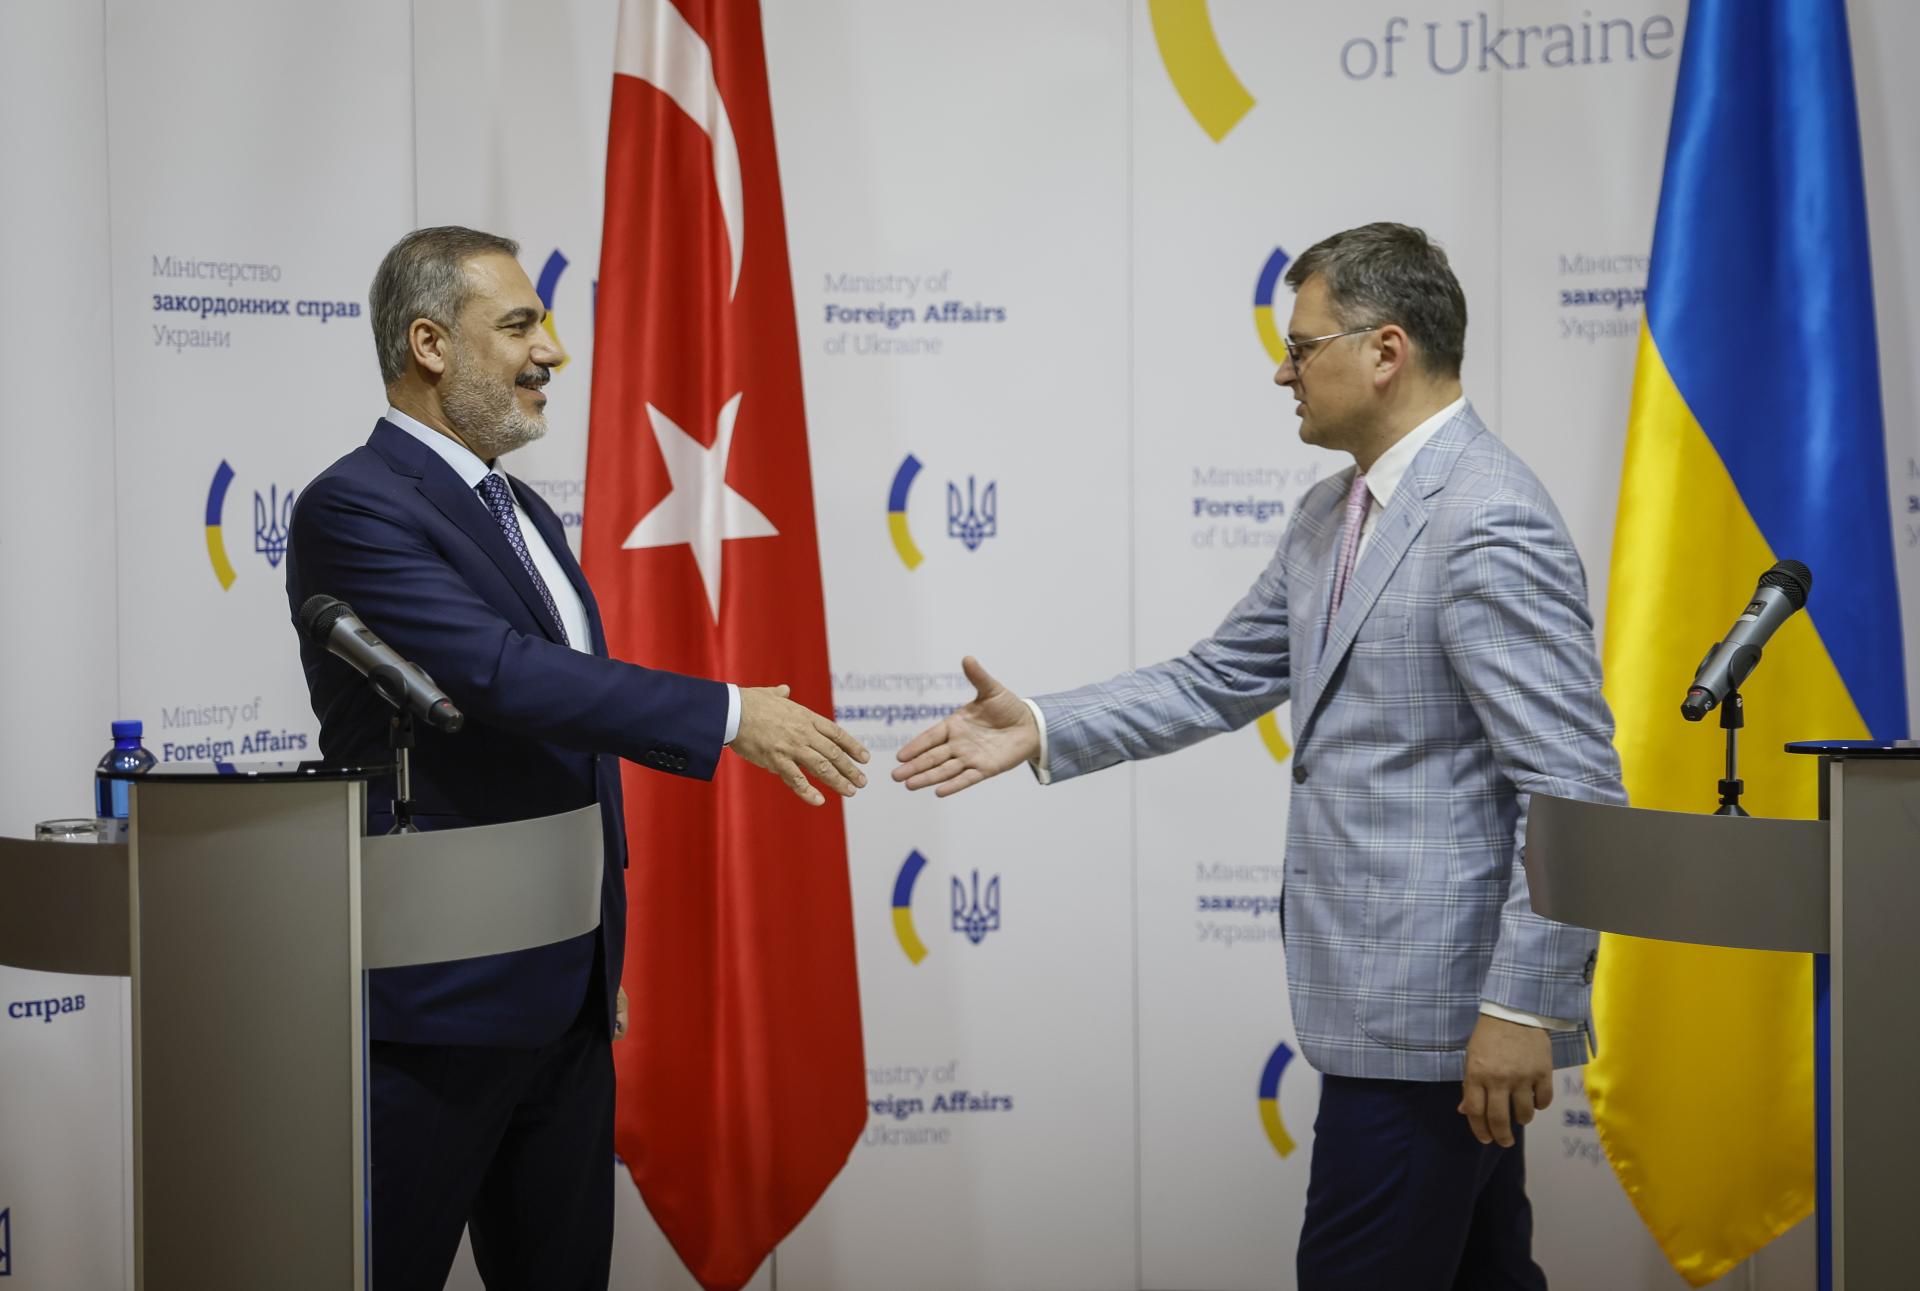 Turecko chce obnoviť pôvodnú ukrajinsko-ruskú obilnú dohodu, ktorú Moskva neobnovila. Odmieta alternatívy